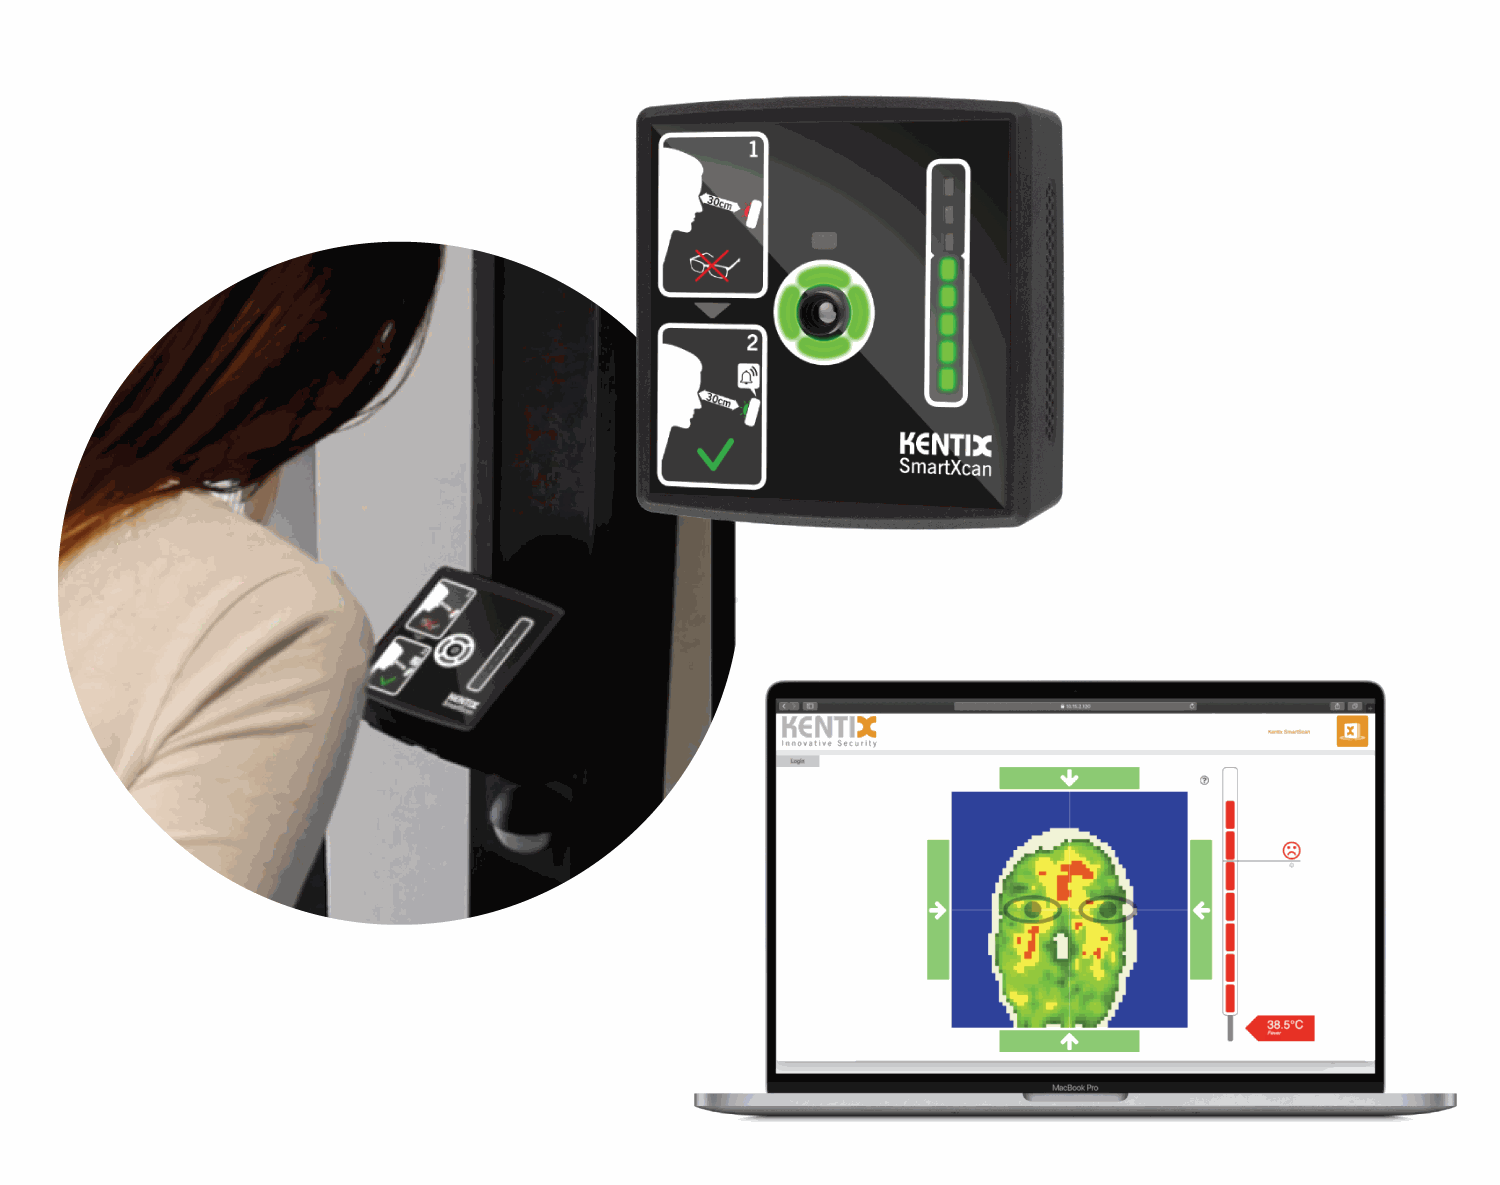 Kentix SmartScan bezkontakta ķermeņa termometrs raksturīgs ar vienkāršu un ērtu lietošanu